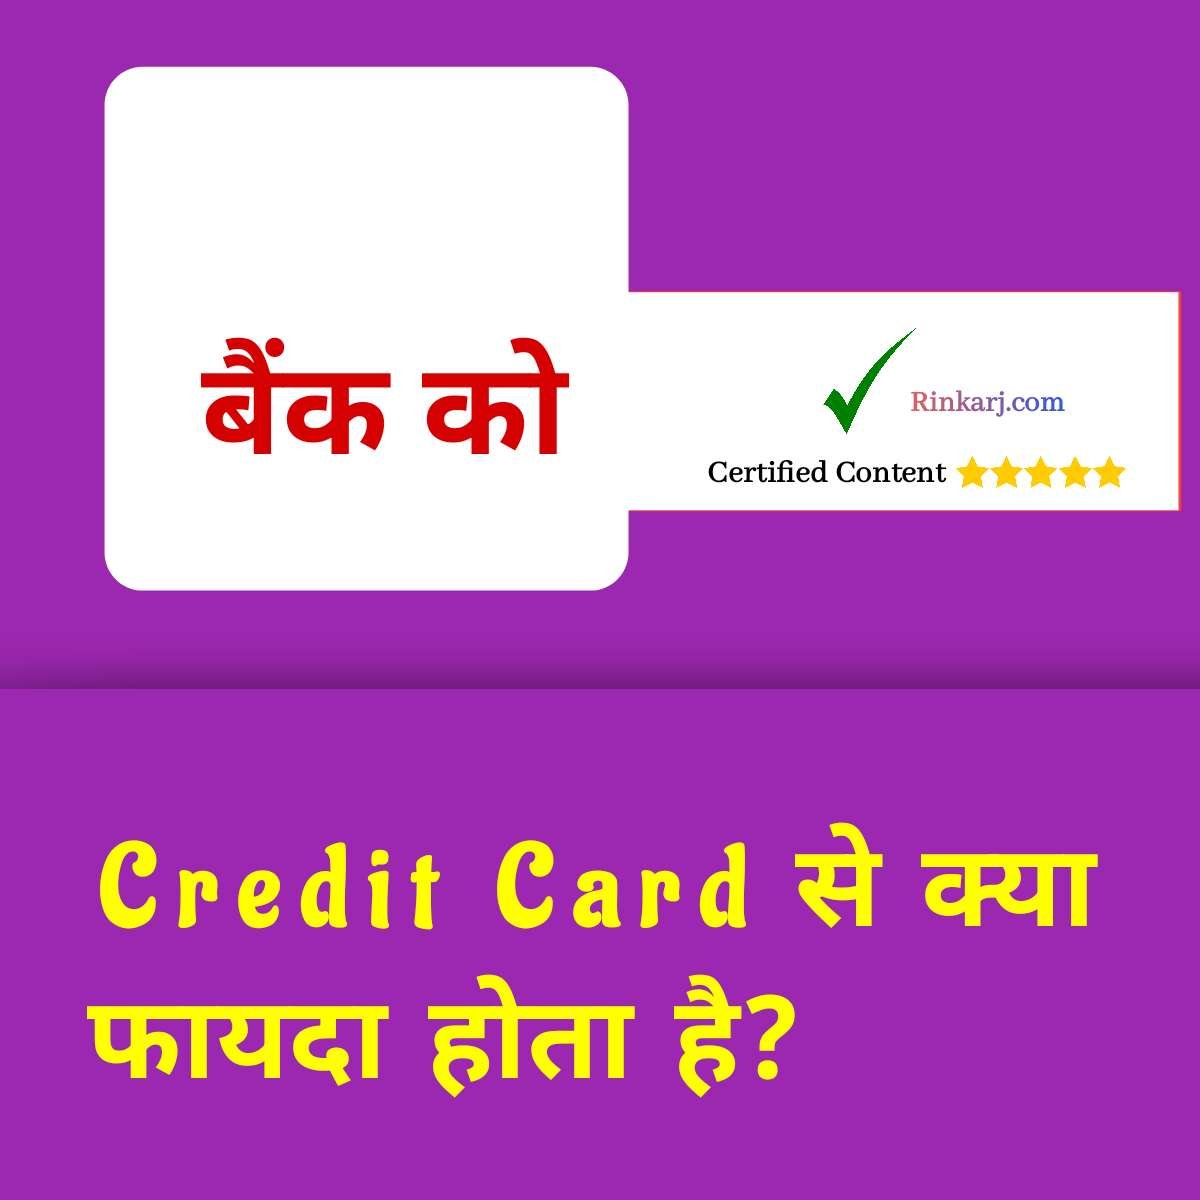 Credit Card Se Bank Ko Kya Fayda Hota Hai